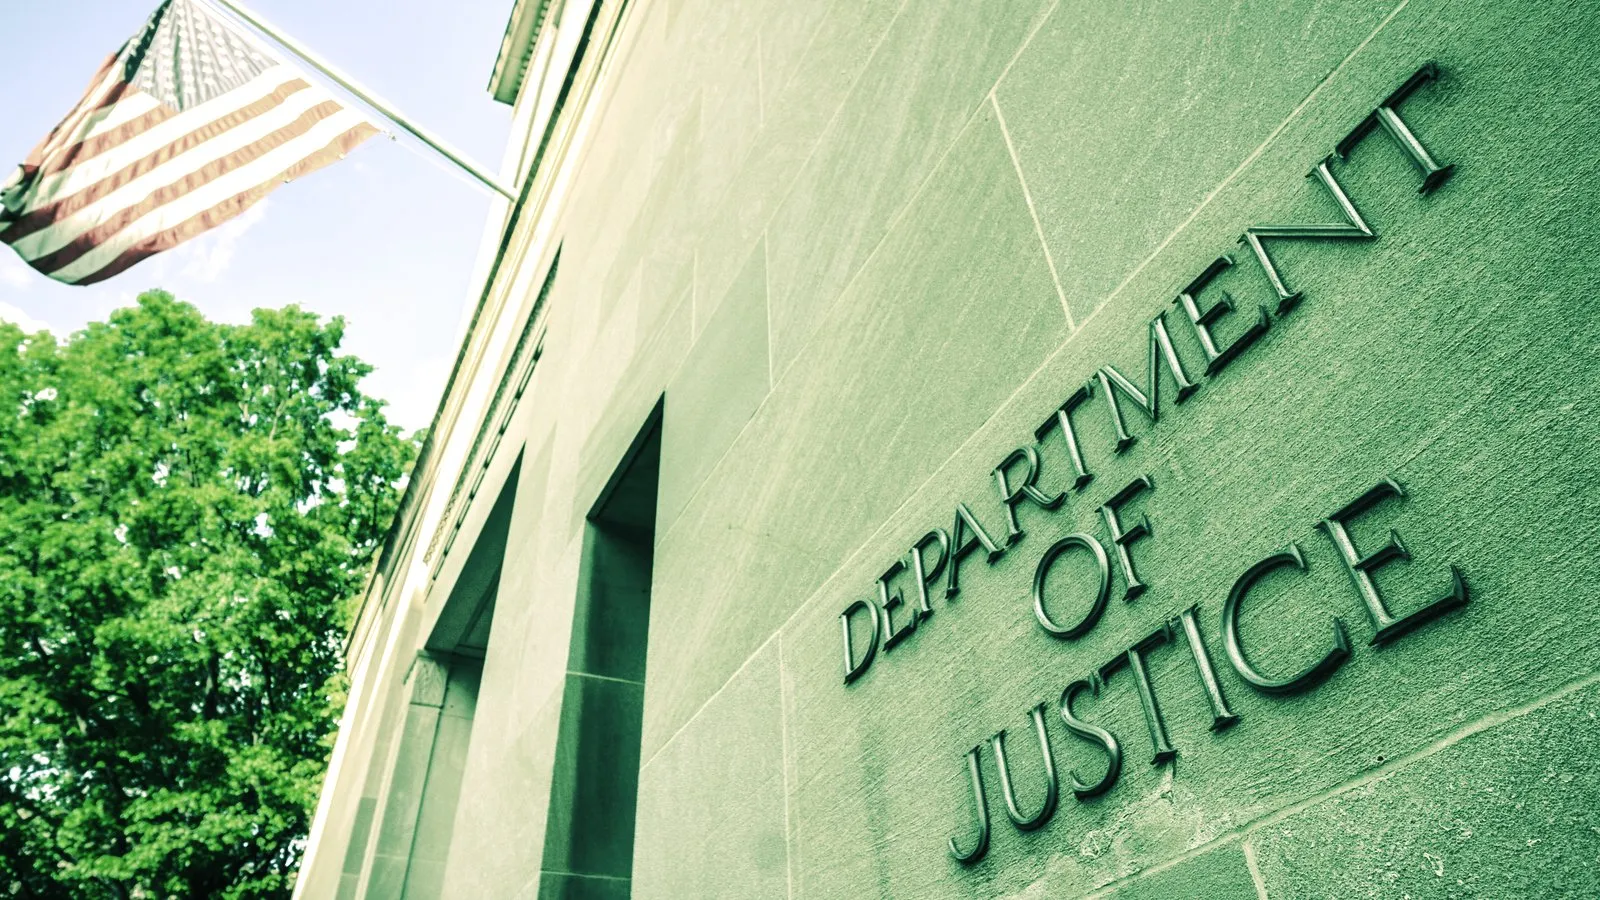 Departamento de Justicia. Imagen: Shutterstock